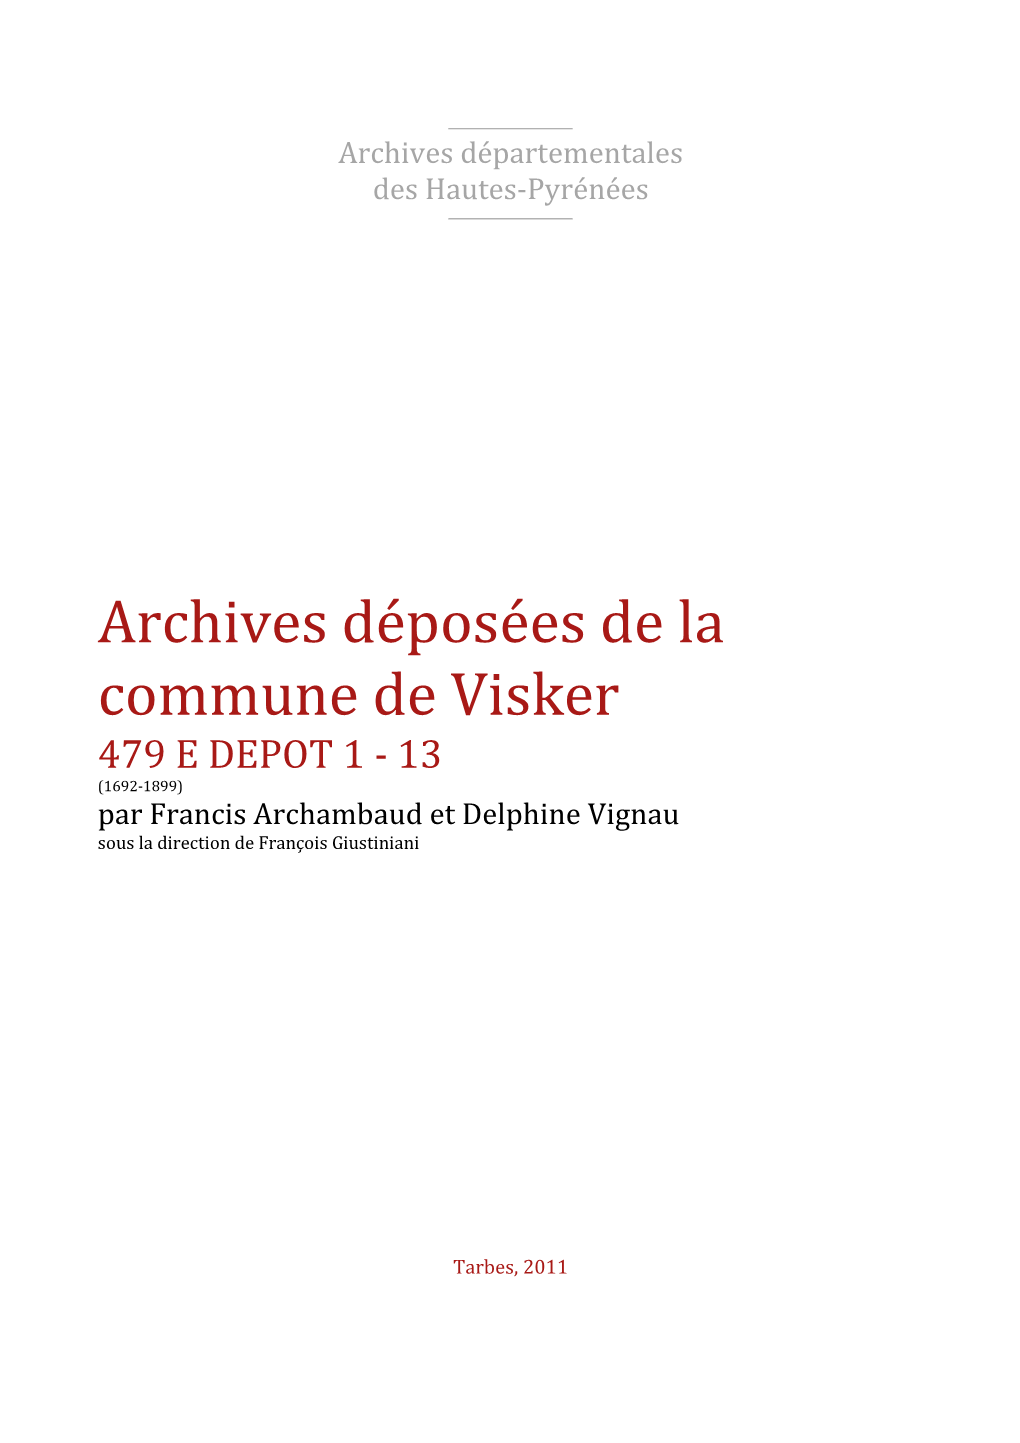 Archives Déposées De La Commune De Visker 479 E DEPOT 1 - 13 (1692-1899) Par Francis Archambaud Et Delphine Vignau Sous La Direction De François Giustiniani